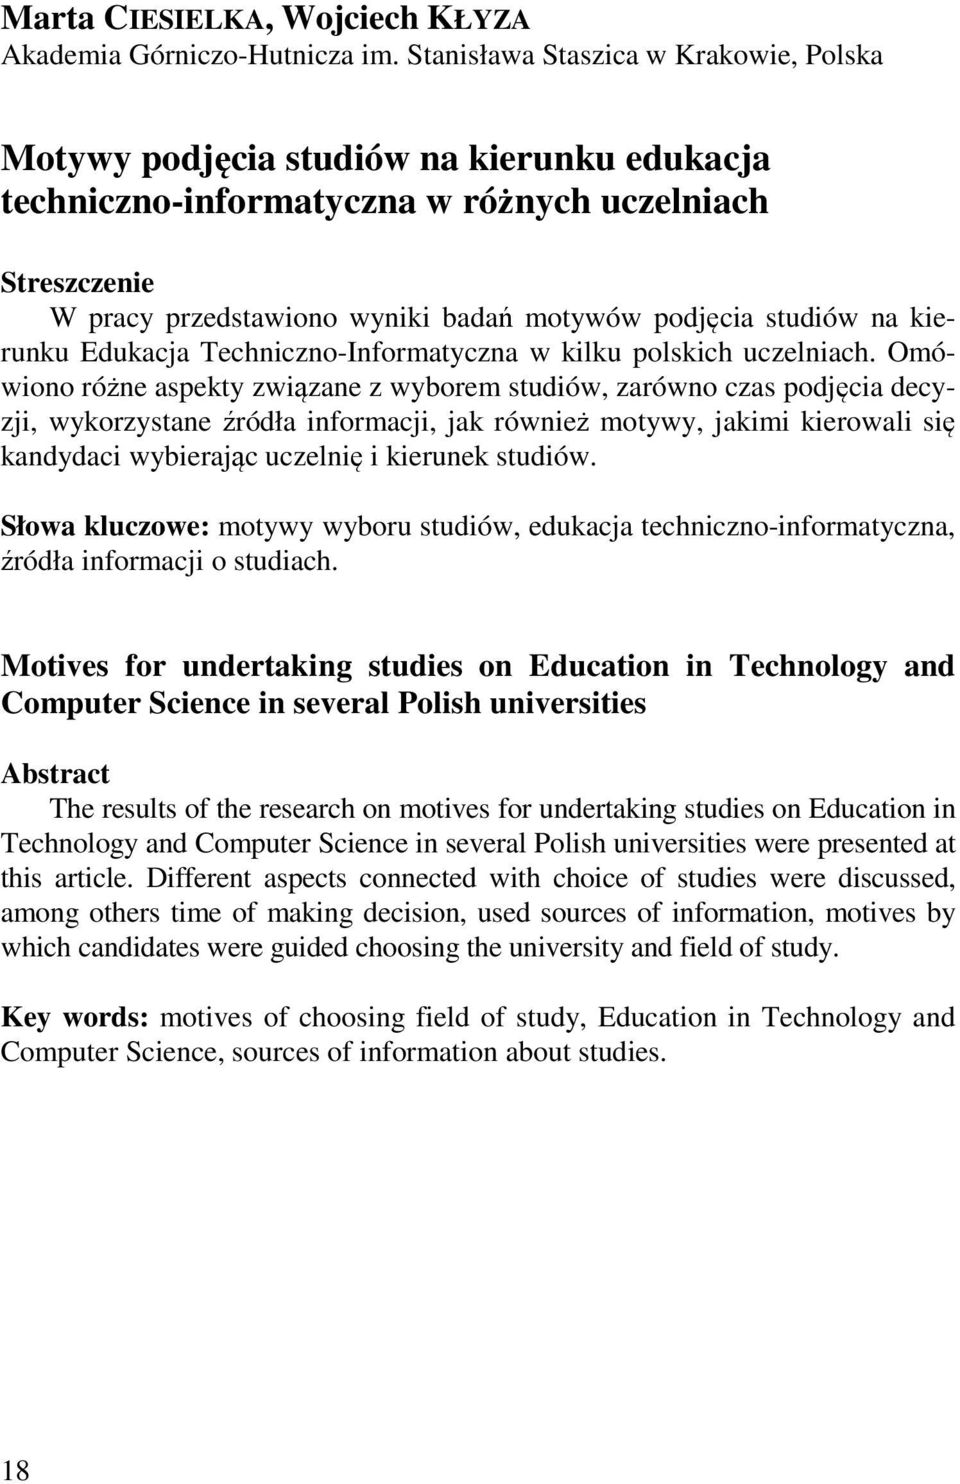 studiów na kierunku Edukacja Techniczno-Informatyczna w kilku polskich uczelniach.